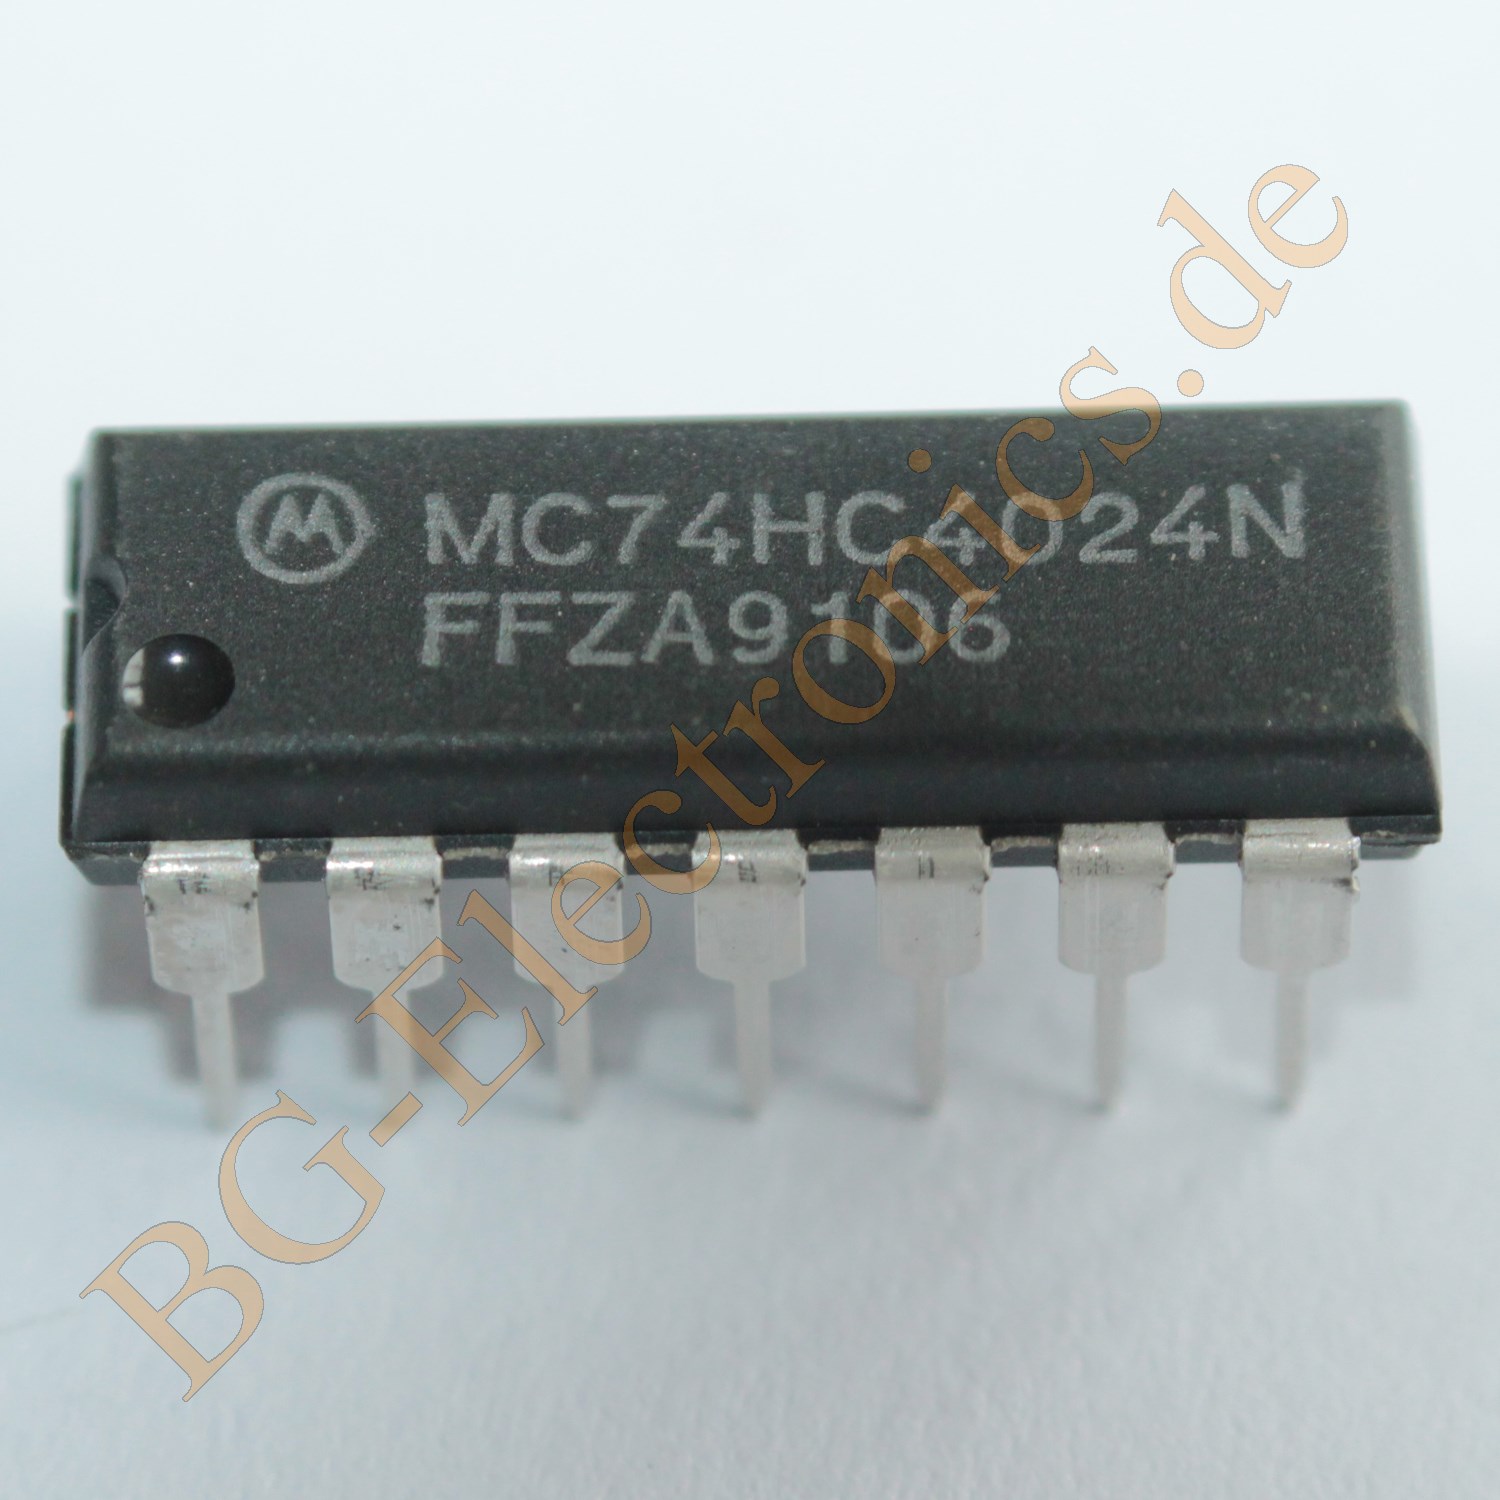 MC74HC4024N